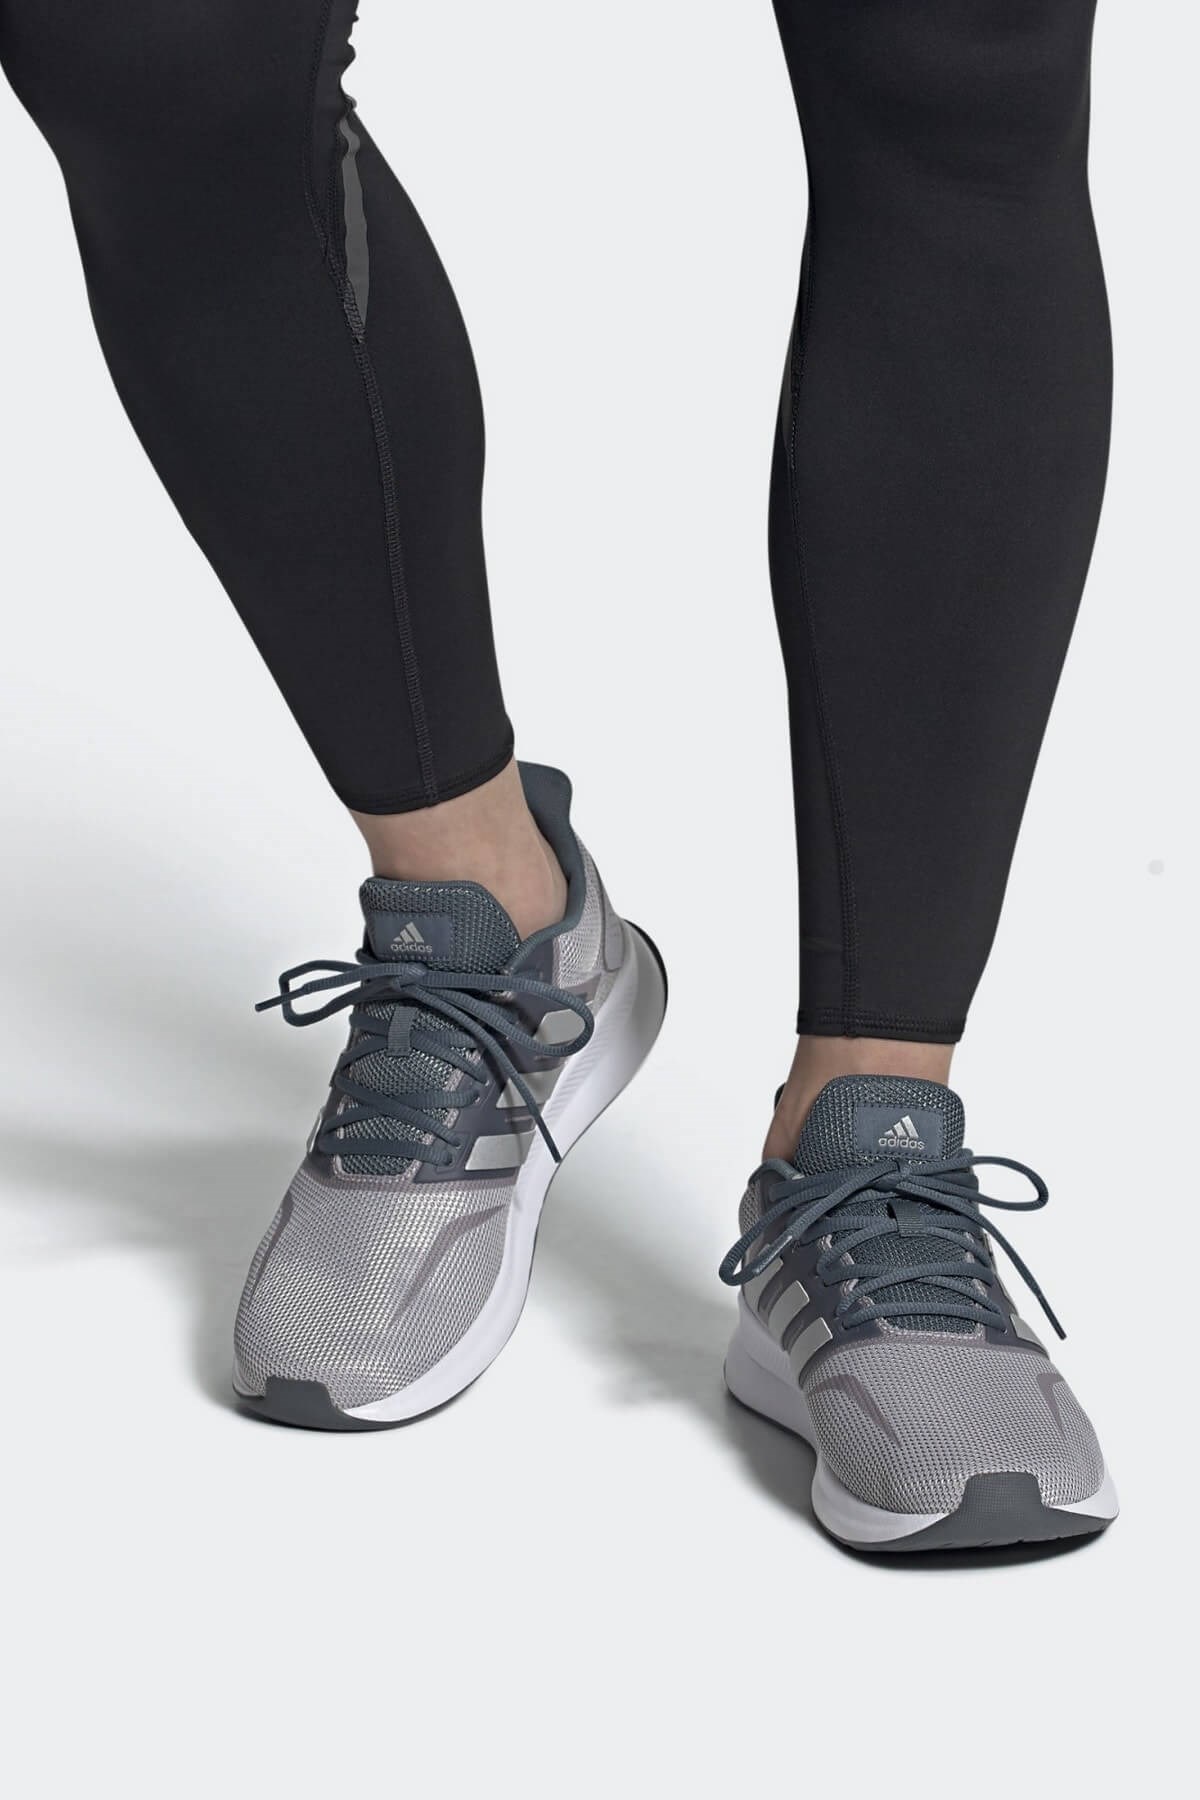 Adidas Runfalcon Erkek Yürüyüş Koşu Ayakkabı FW5058GRI - FW5058GRI - ADIDAS  - Spor Ayakkabı - Spor Giyim - Çanta - Aksesuar | sahilspor.com